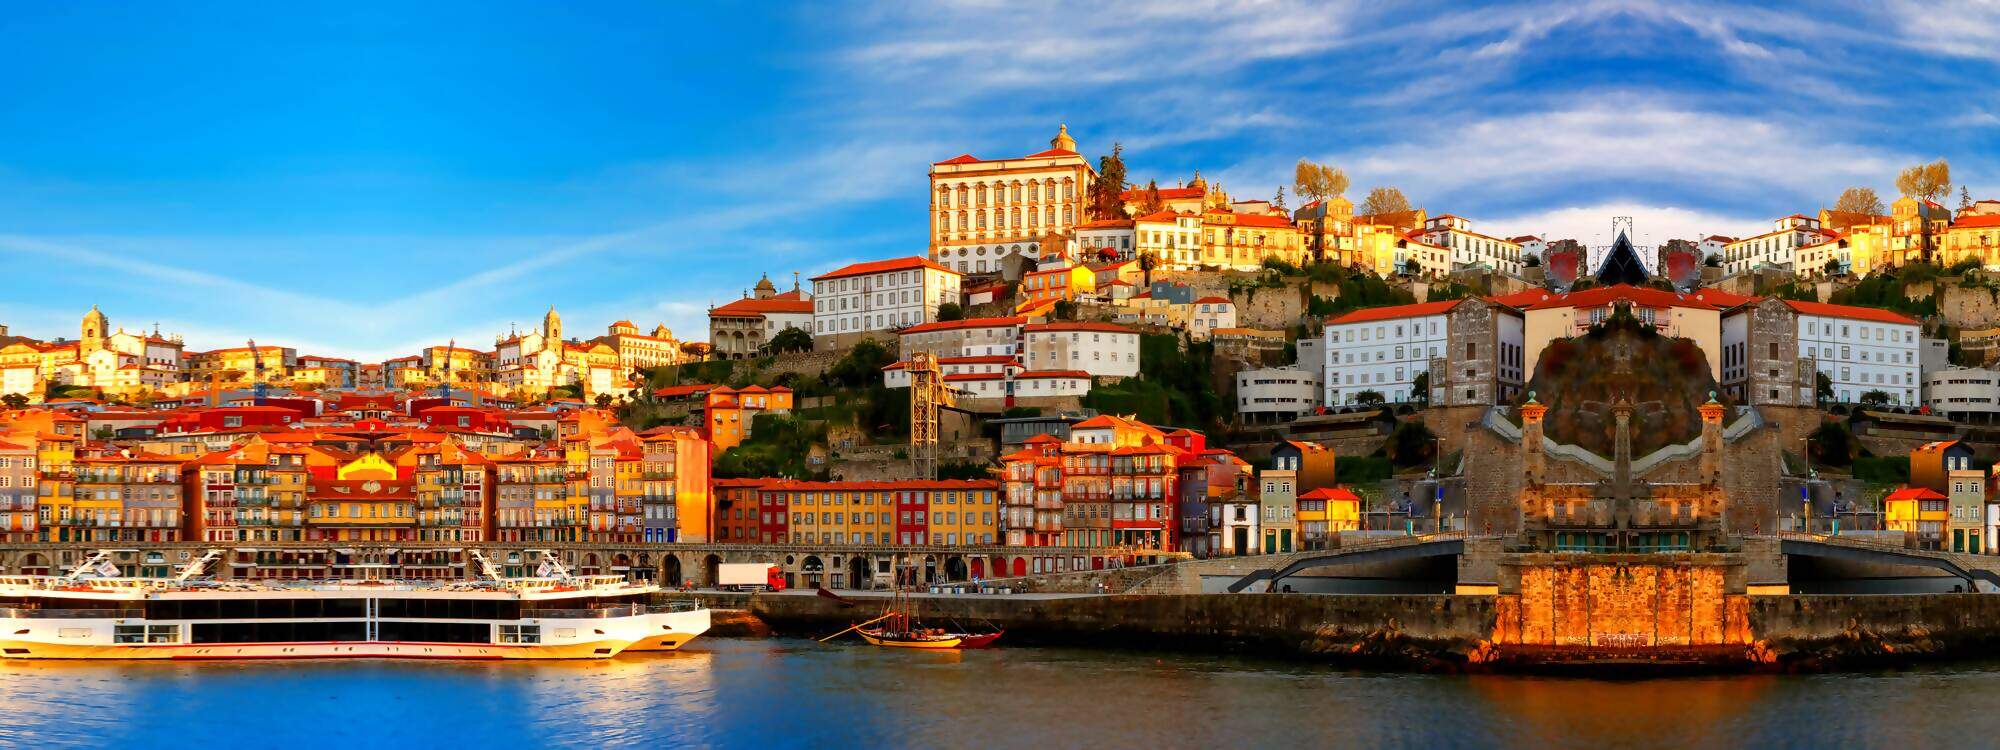 Mit der Dom Luis Brueck ueberquert man den Fluss Douro - Stad Porto - Portugal